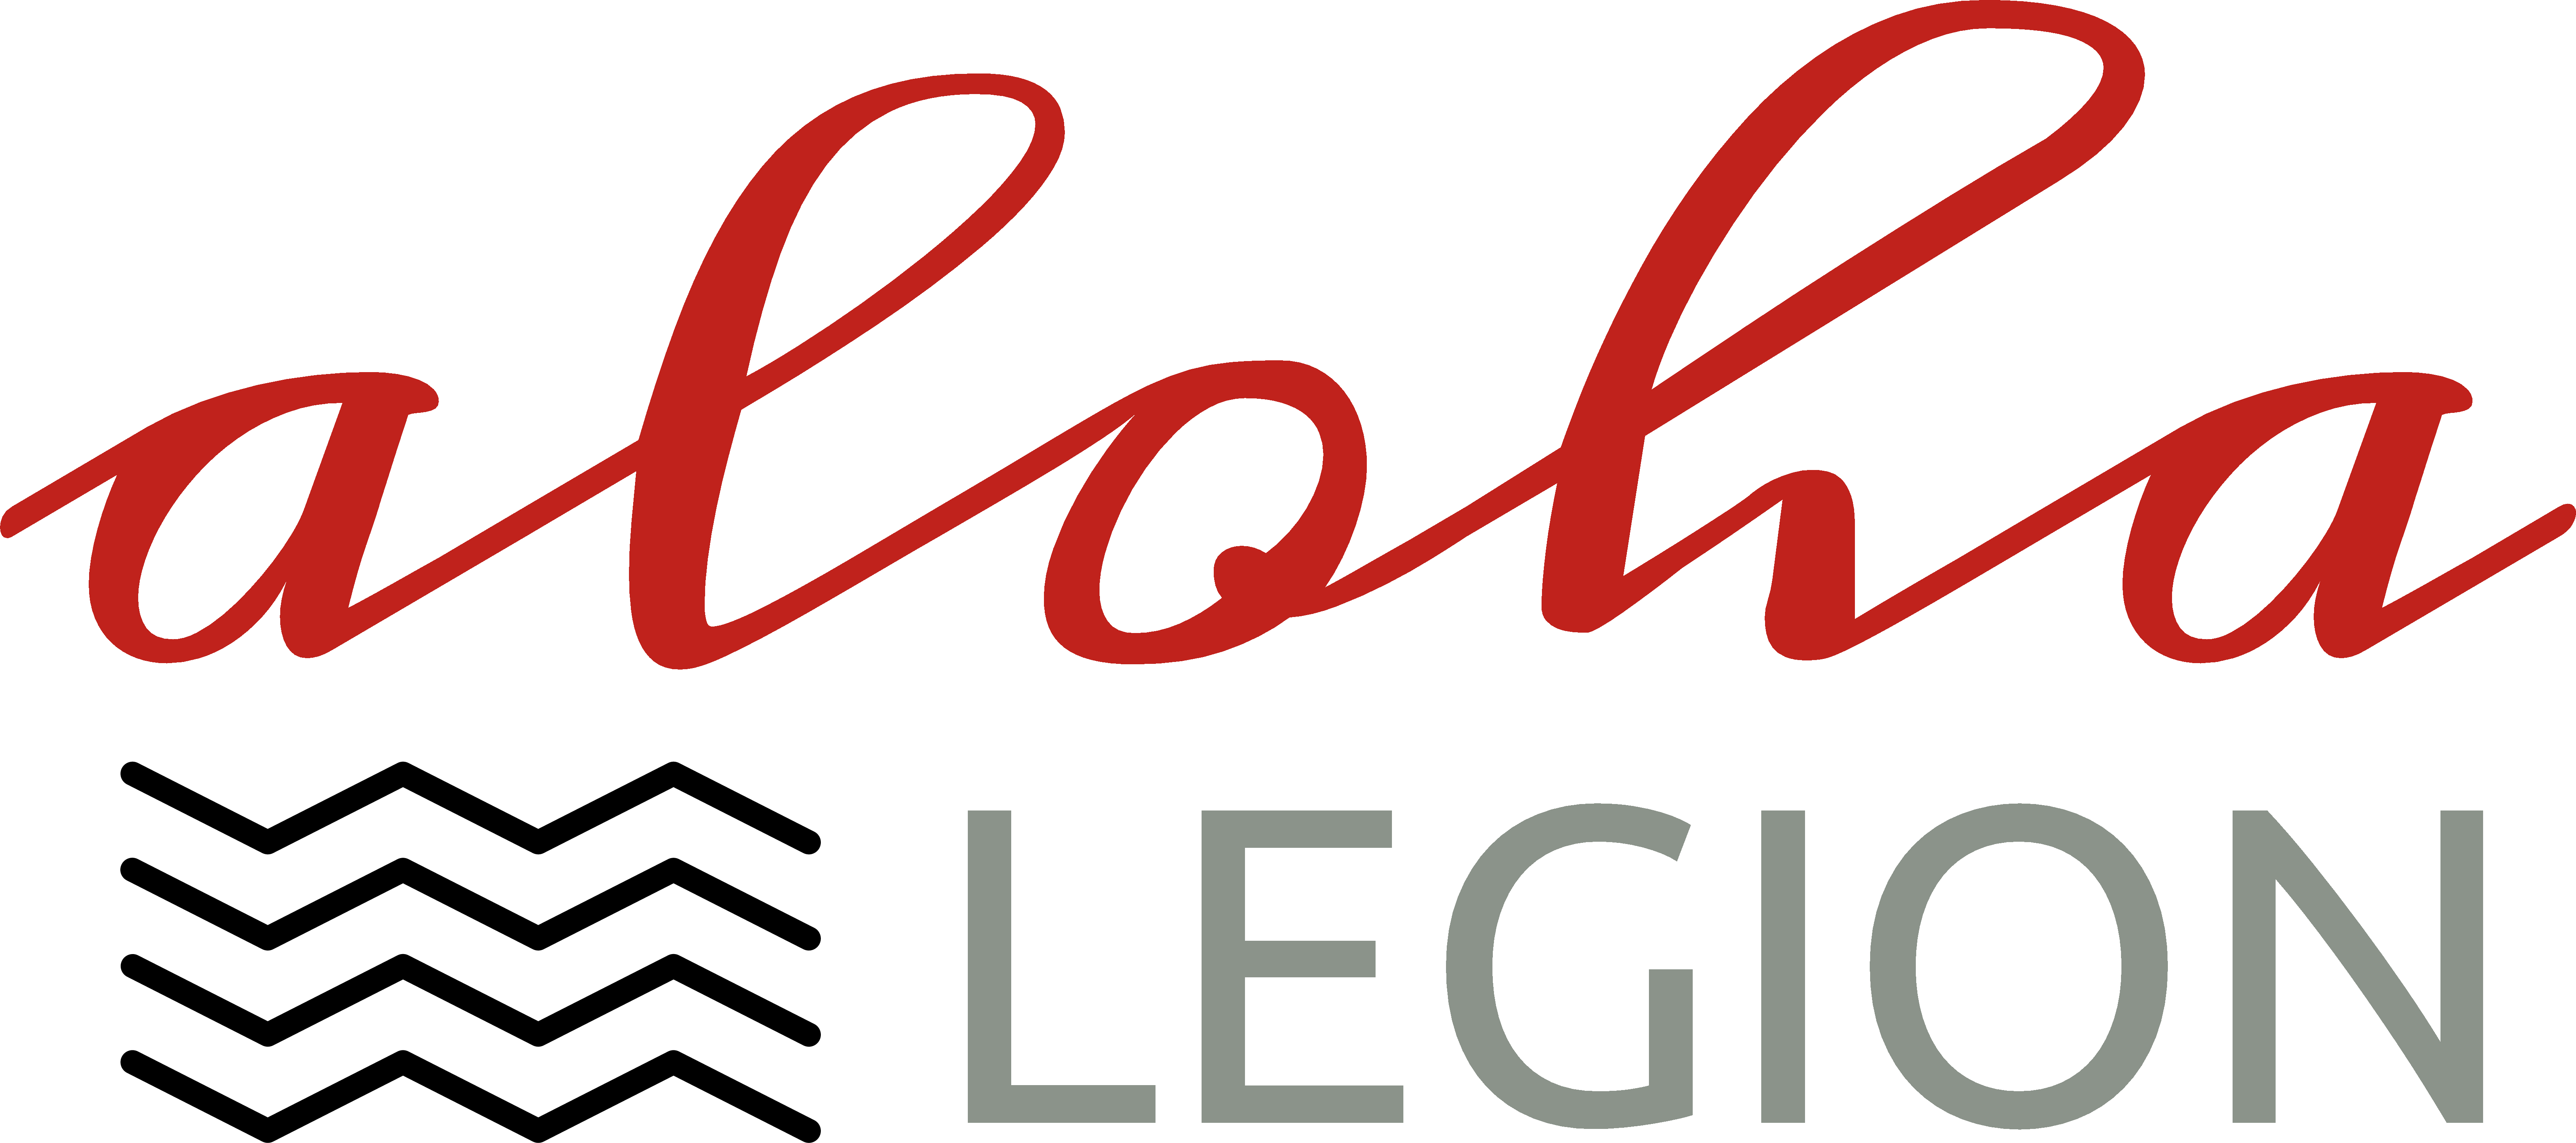 Aloha Legion - Aloha Legion (6766x3001)